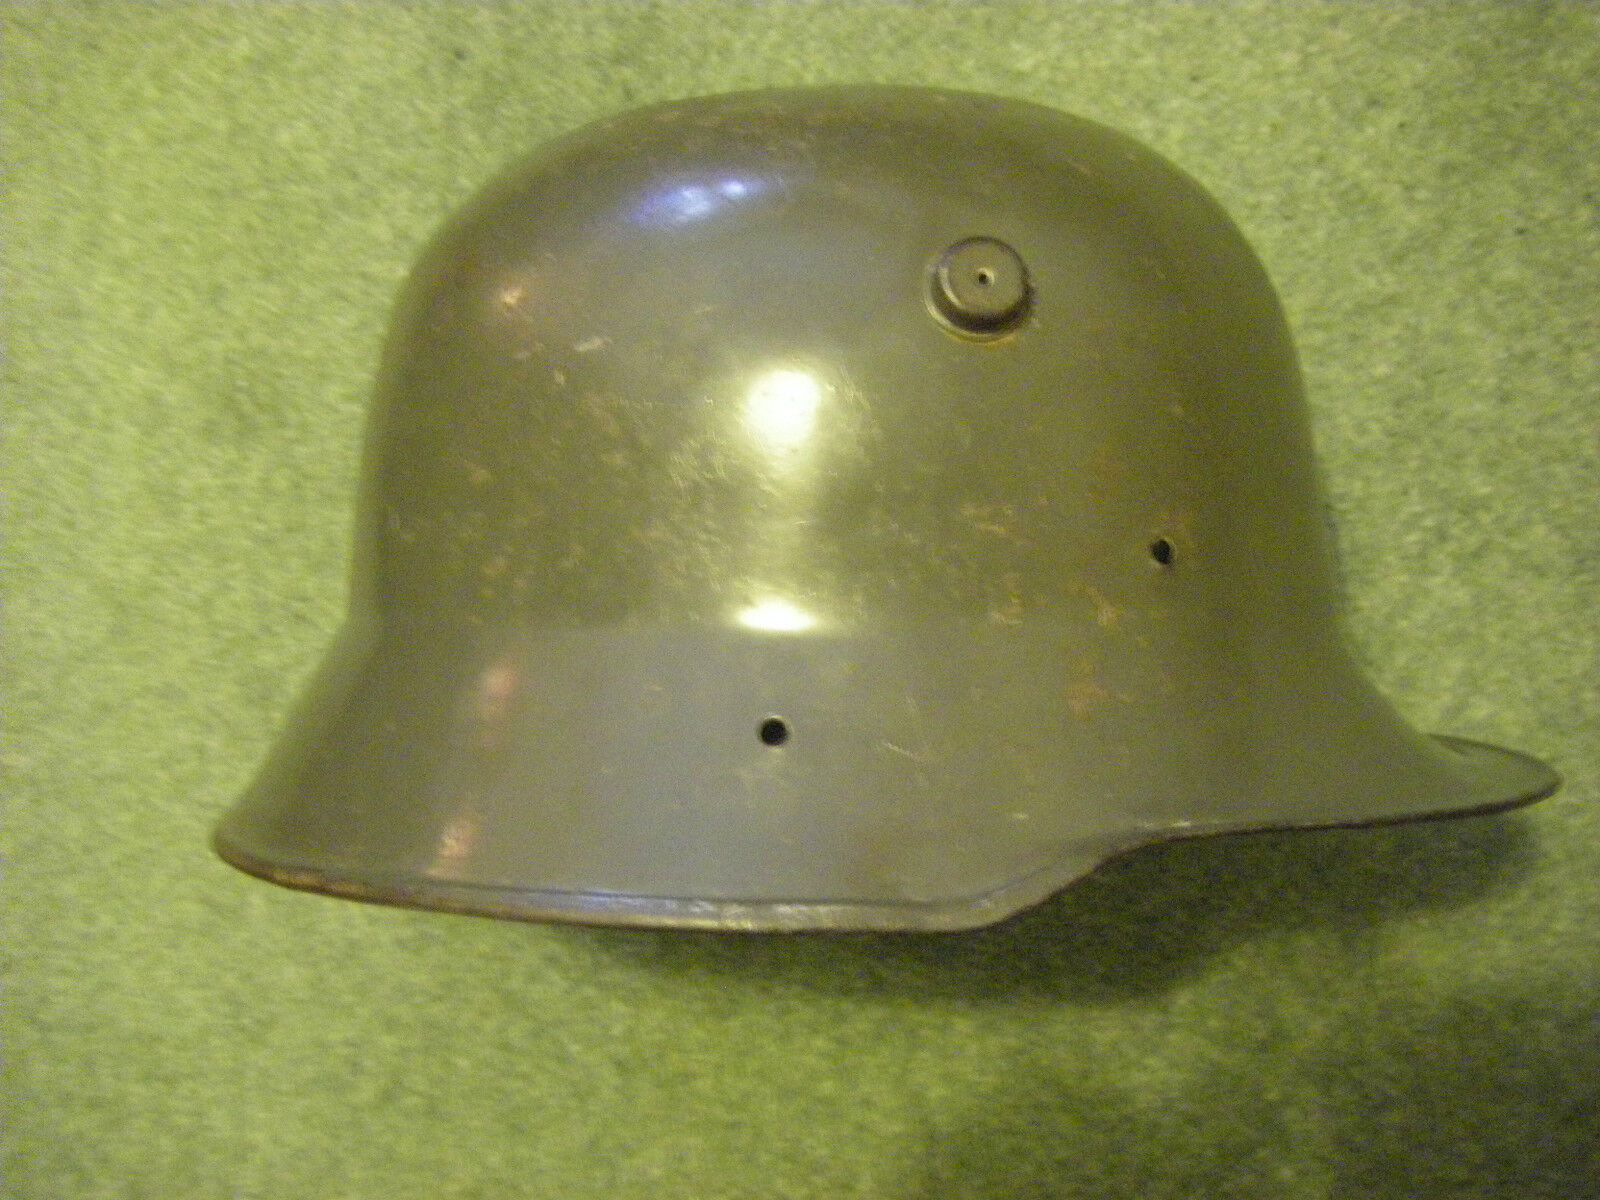 Ultra Rare WW1 Child’s German Helmet Mod.1916 Stahlhelm Toy? Cadet? 3rd Reich?